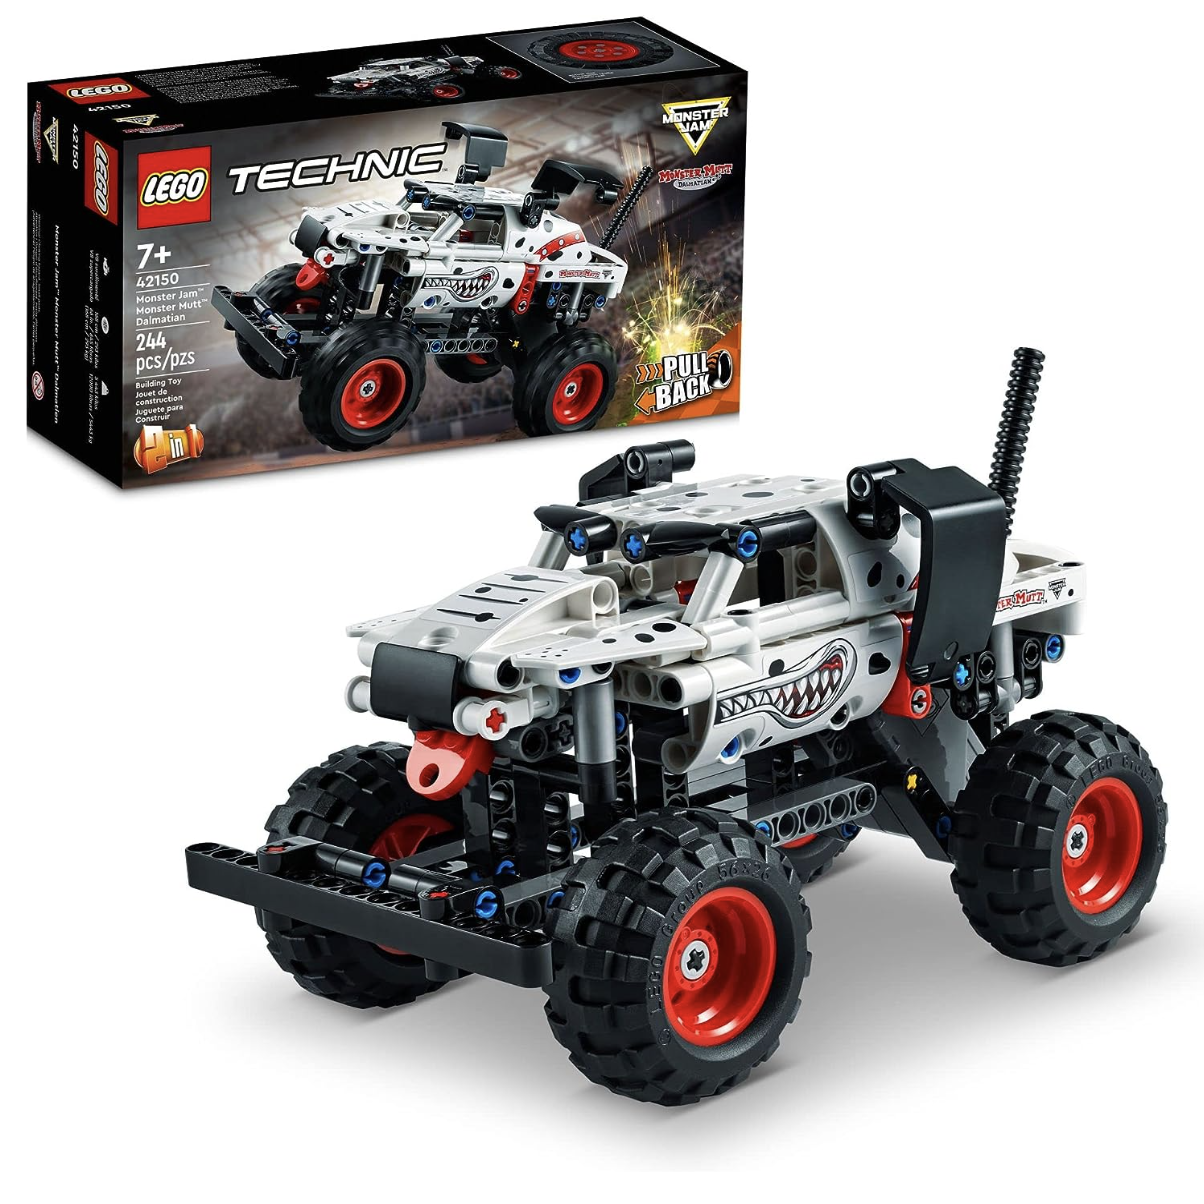 【回歸低價】LEGO 42150 怪物卡車 $15.99